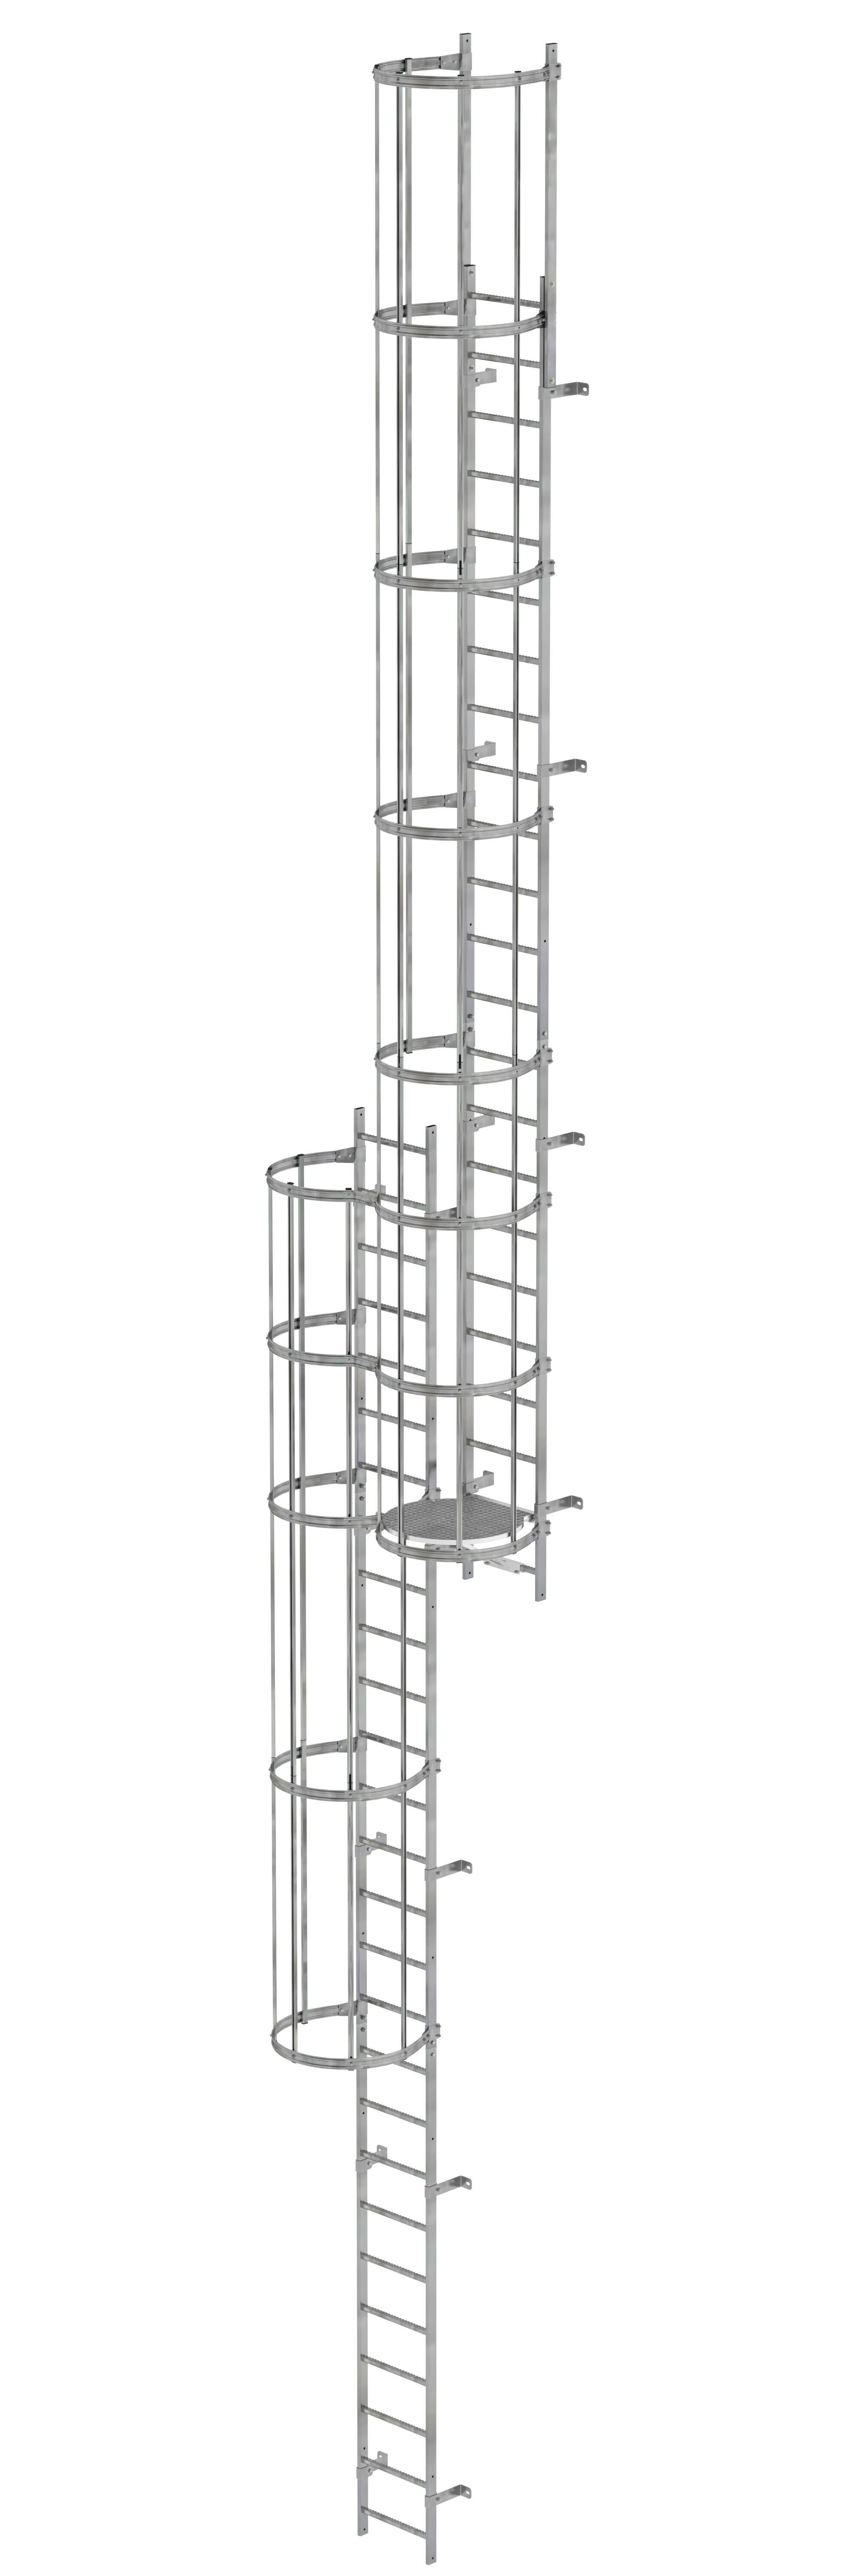 Mehrzügige Steigleiter mit Rückenschutz (Notleiter) Stahl verzinkt 12,96m